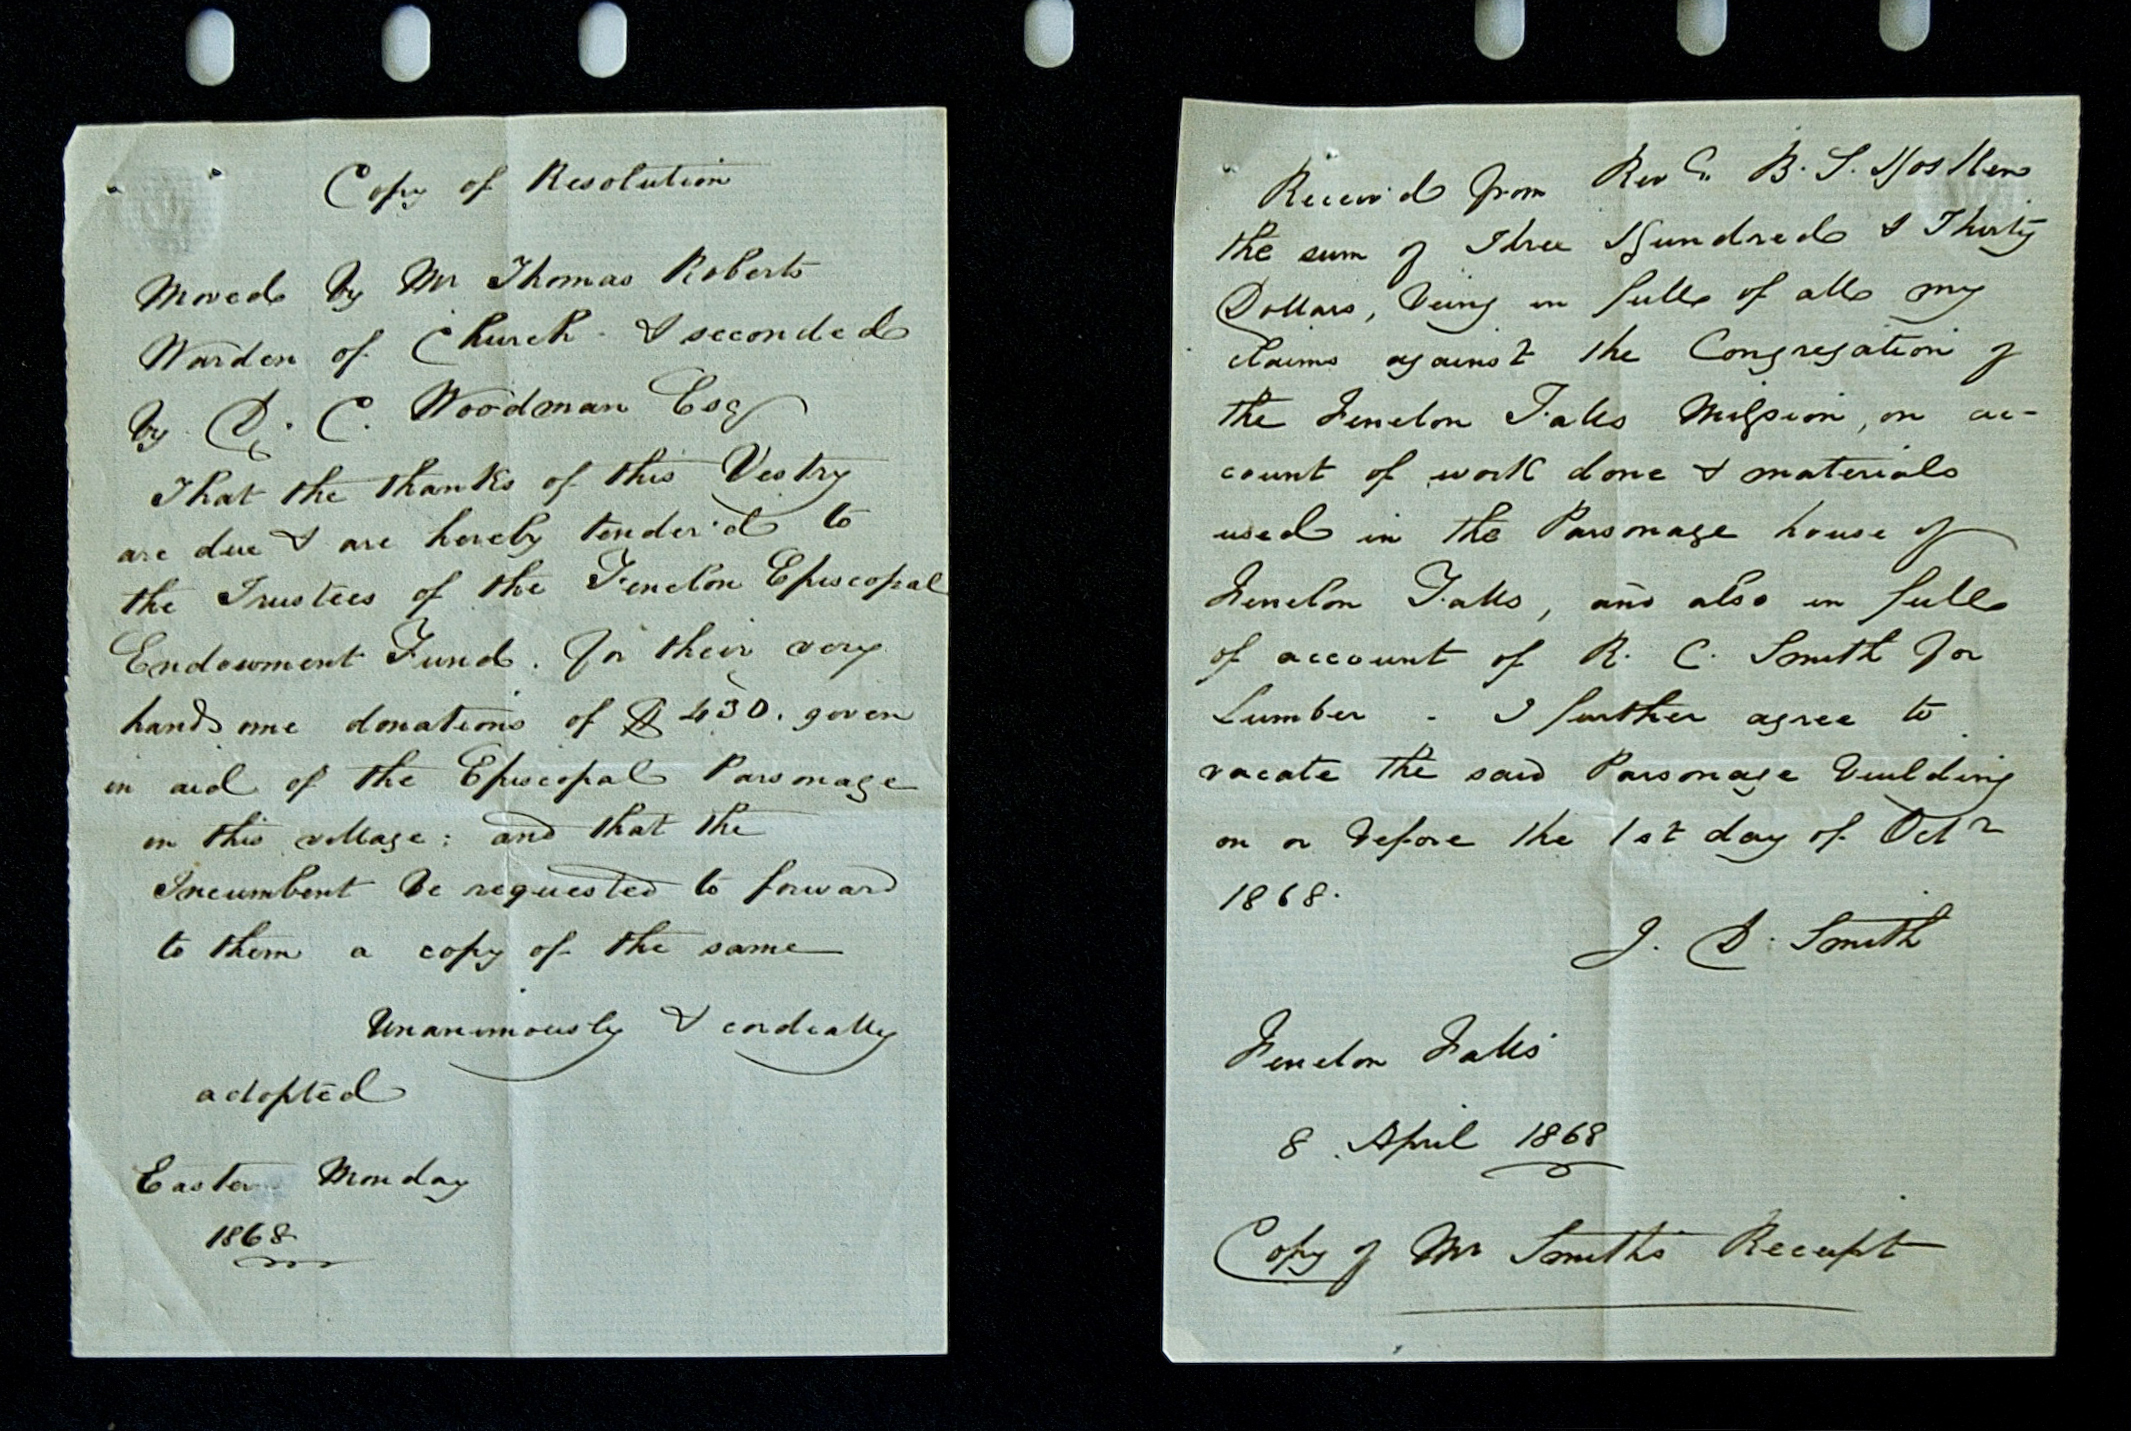 Deux pages d'un texte manuscrit du 8 avril 1868 concernant une résolution de l'église.